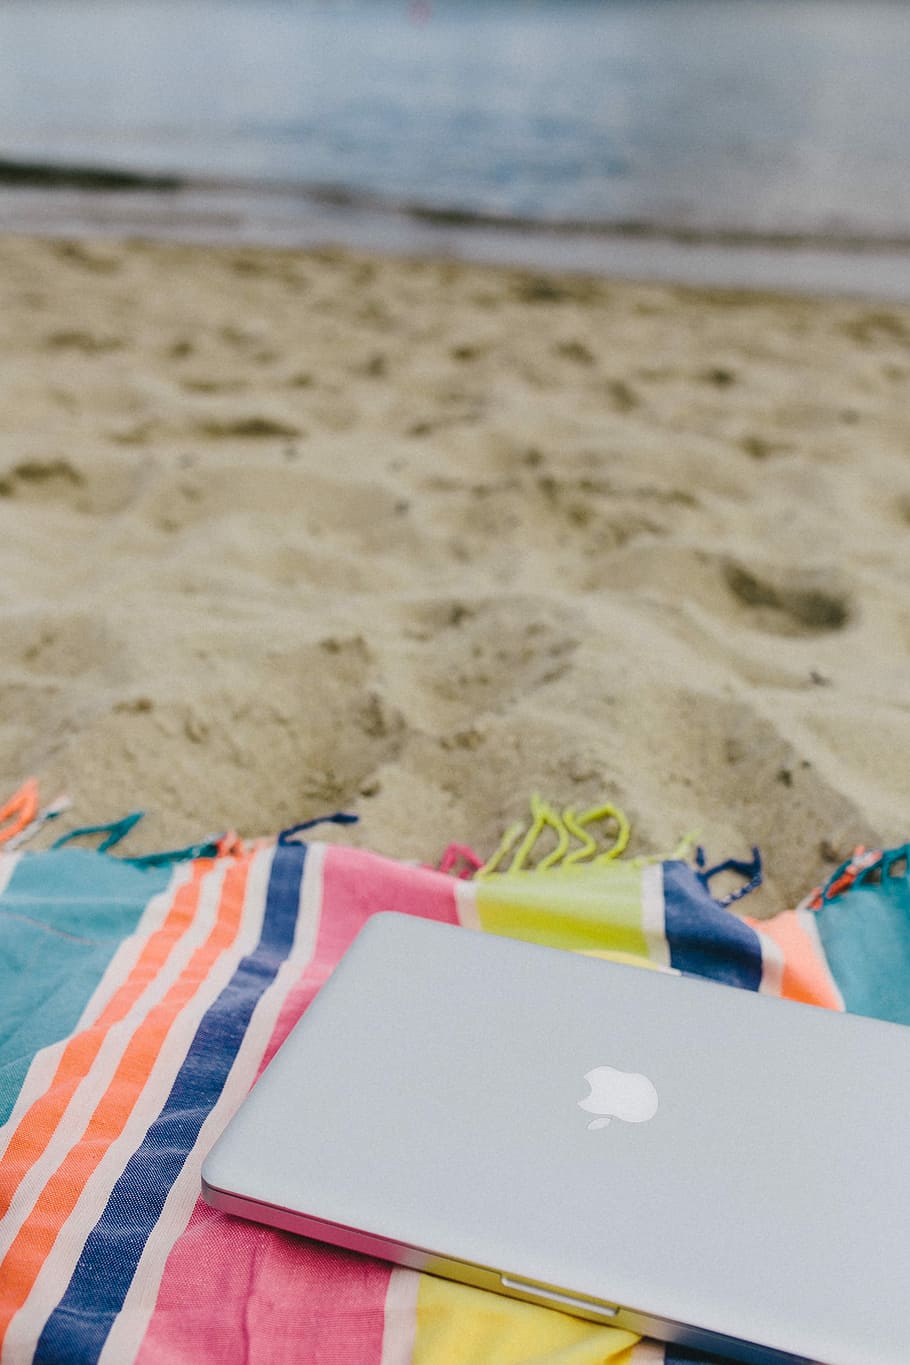 bersama-sama, pantai, pasir, musim panas, teknologi, komputer, macbook, laptop, selimut, liburan